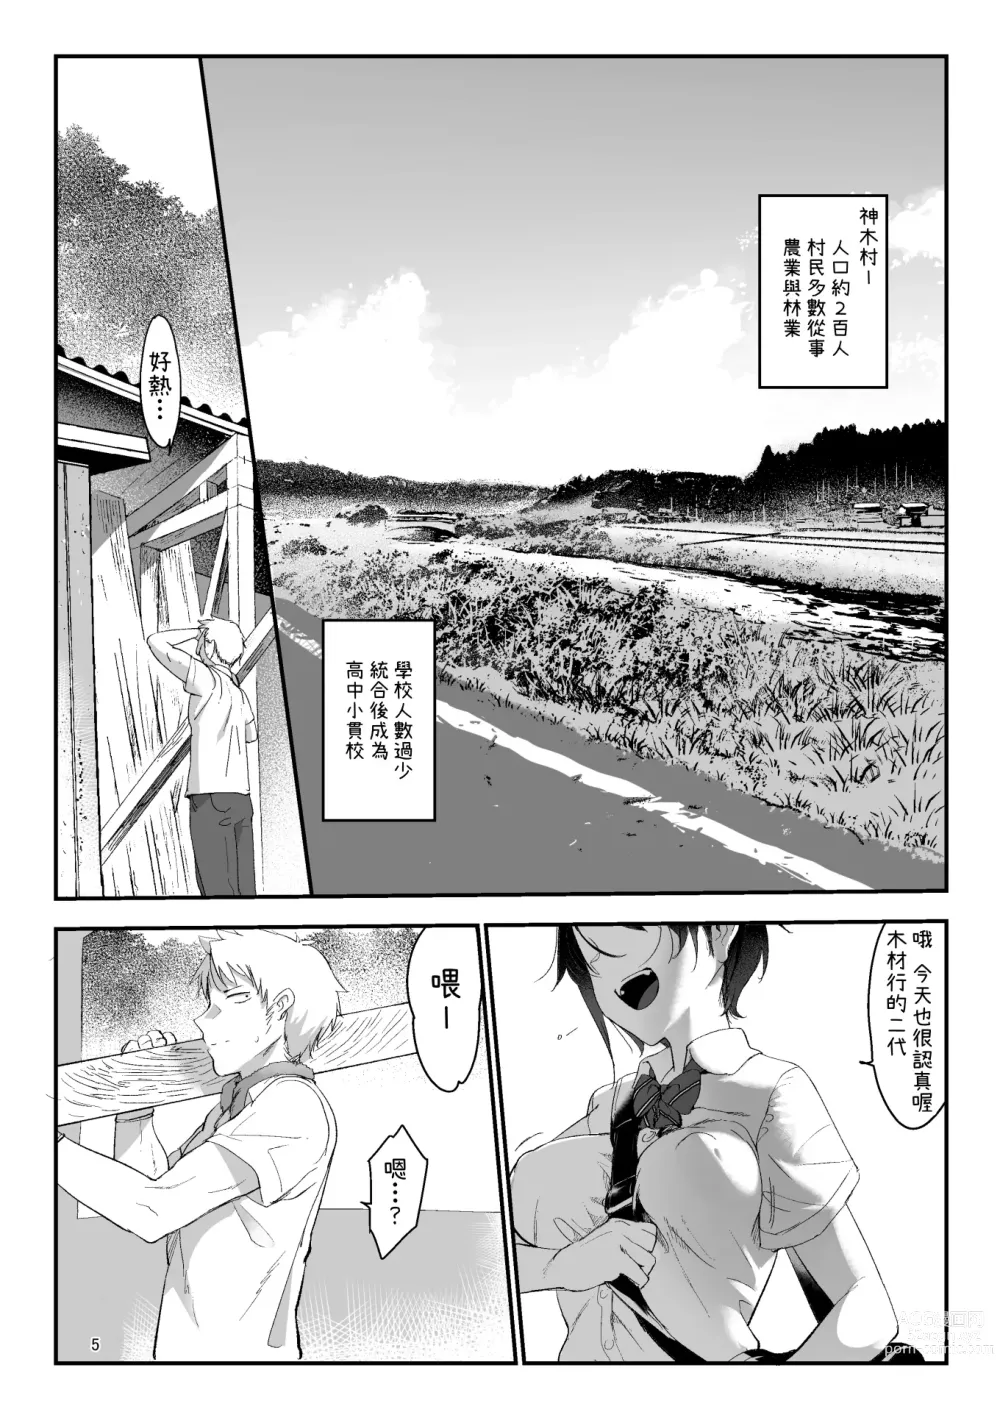 Page 5 of doujinshi Mesudachi